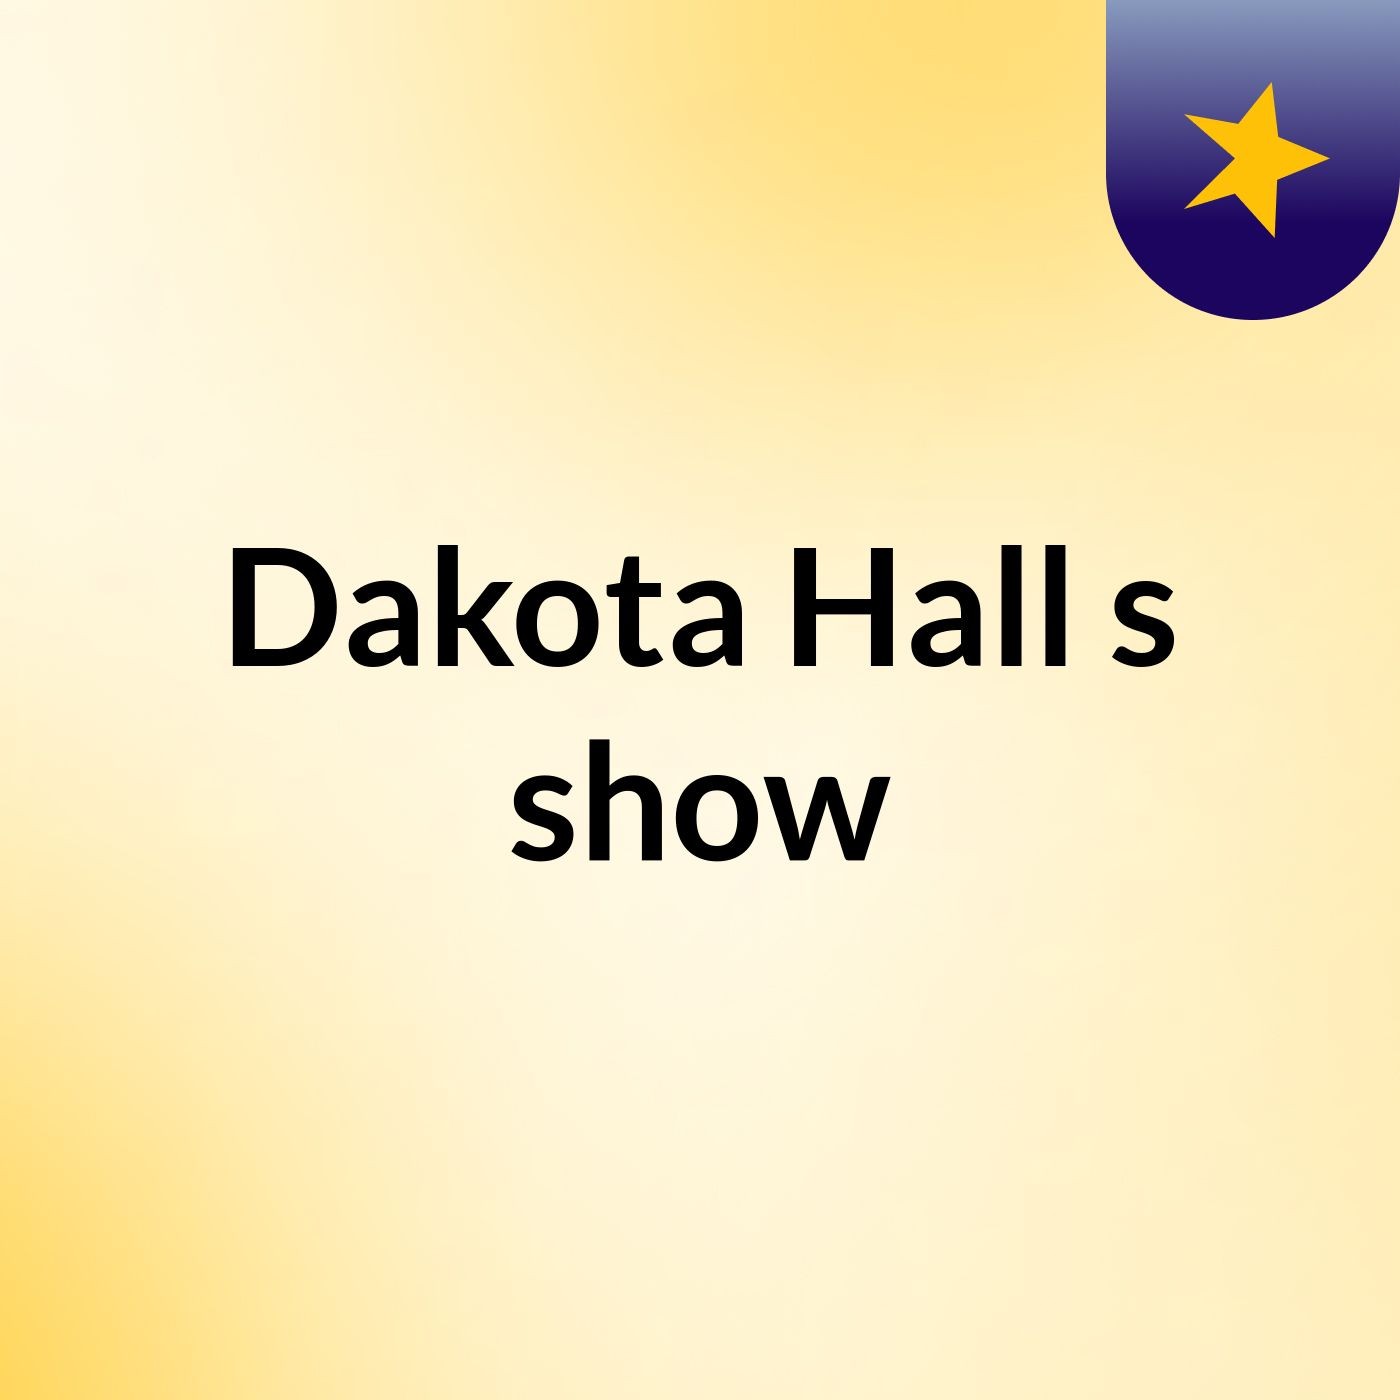 Dakota Hall's show